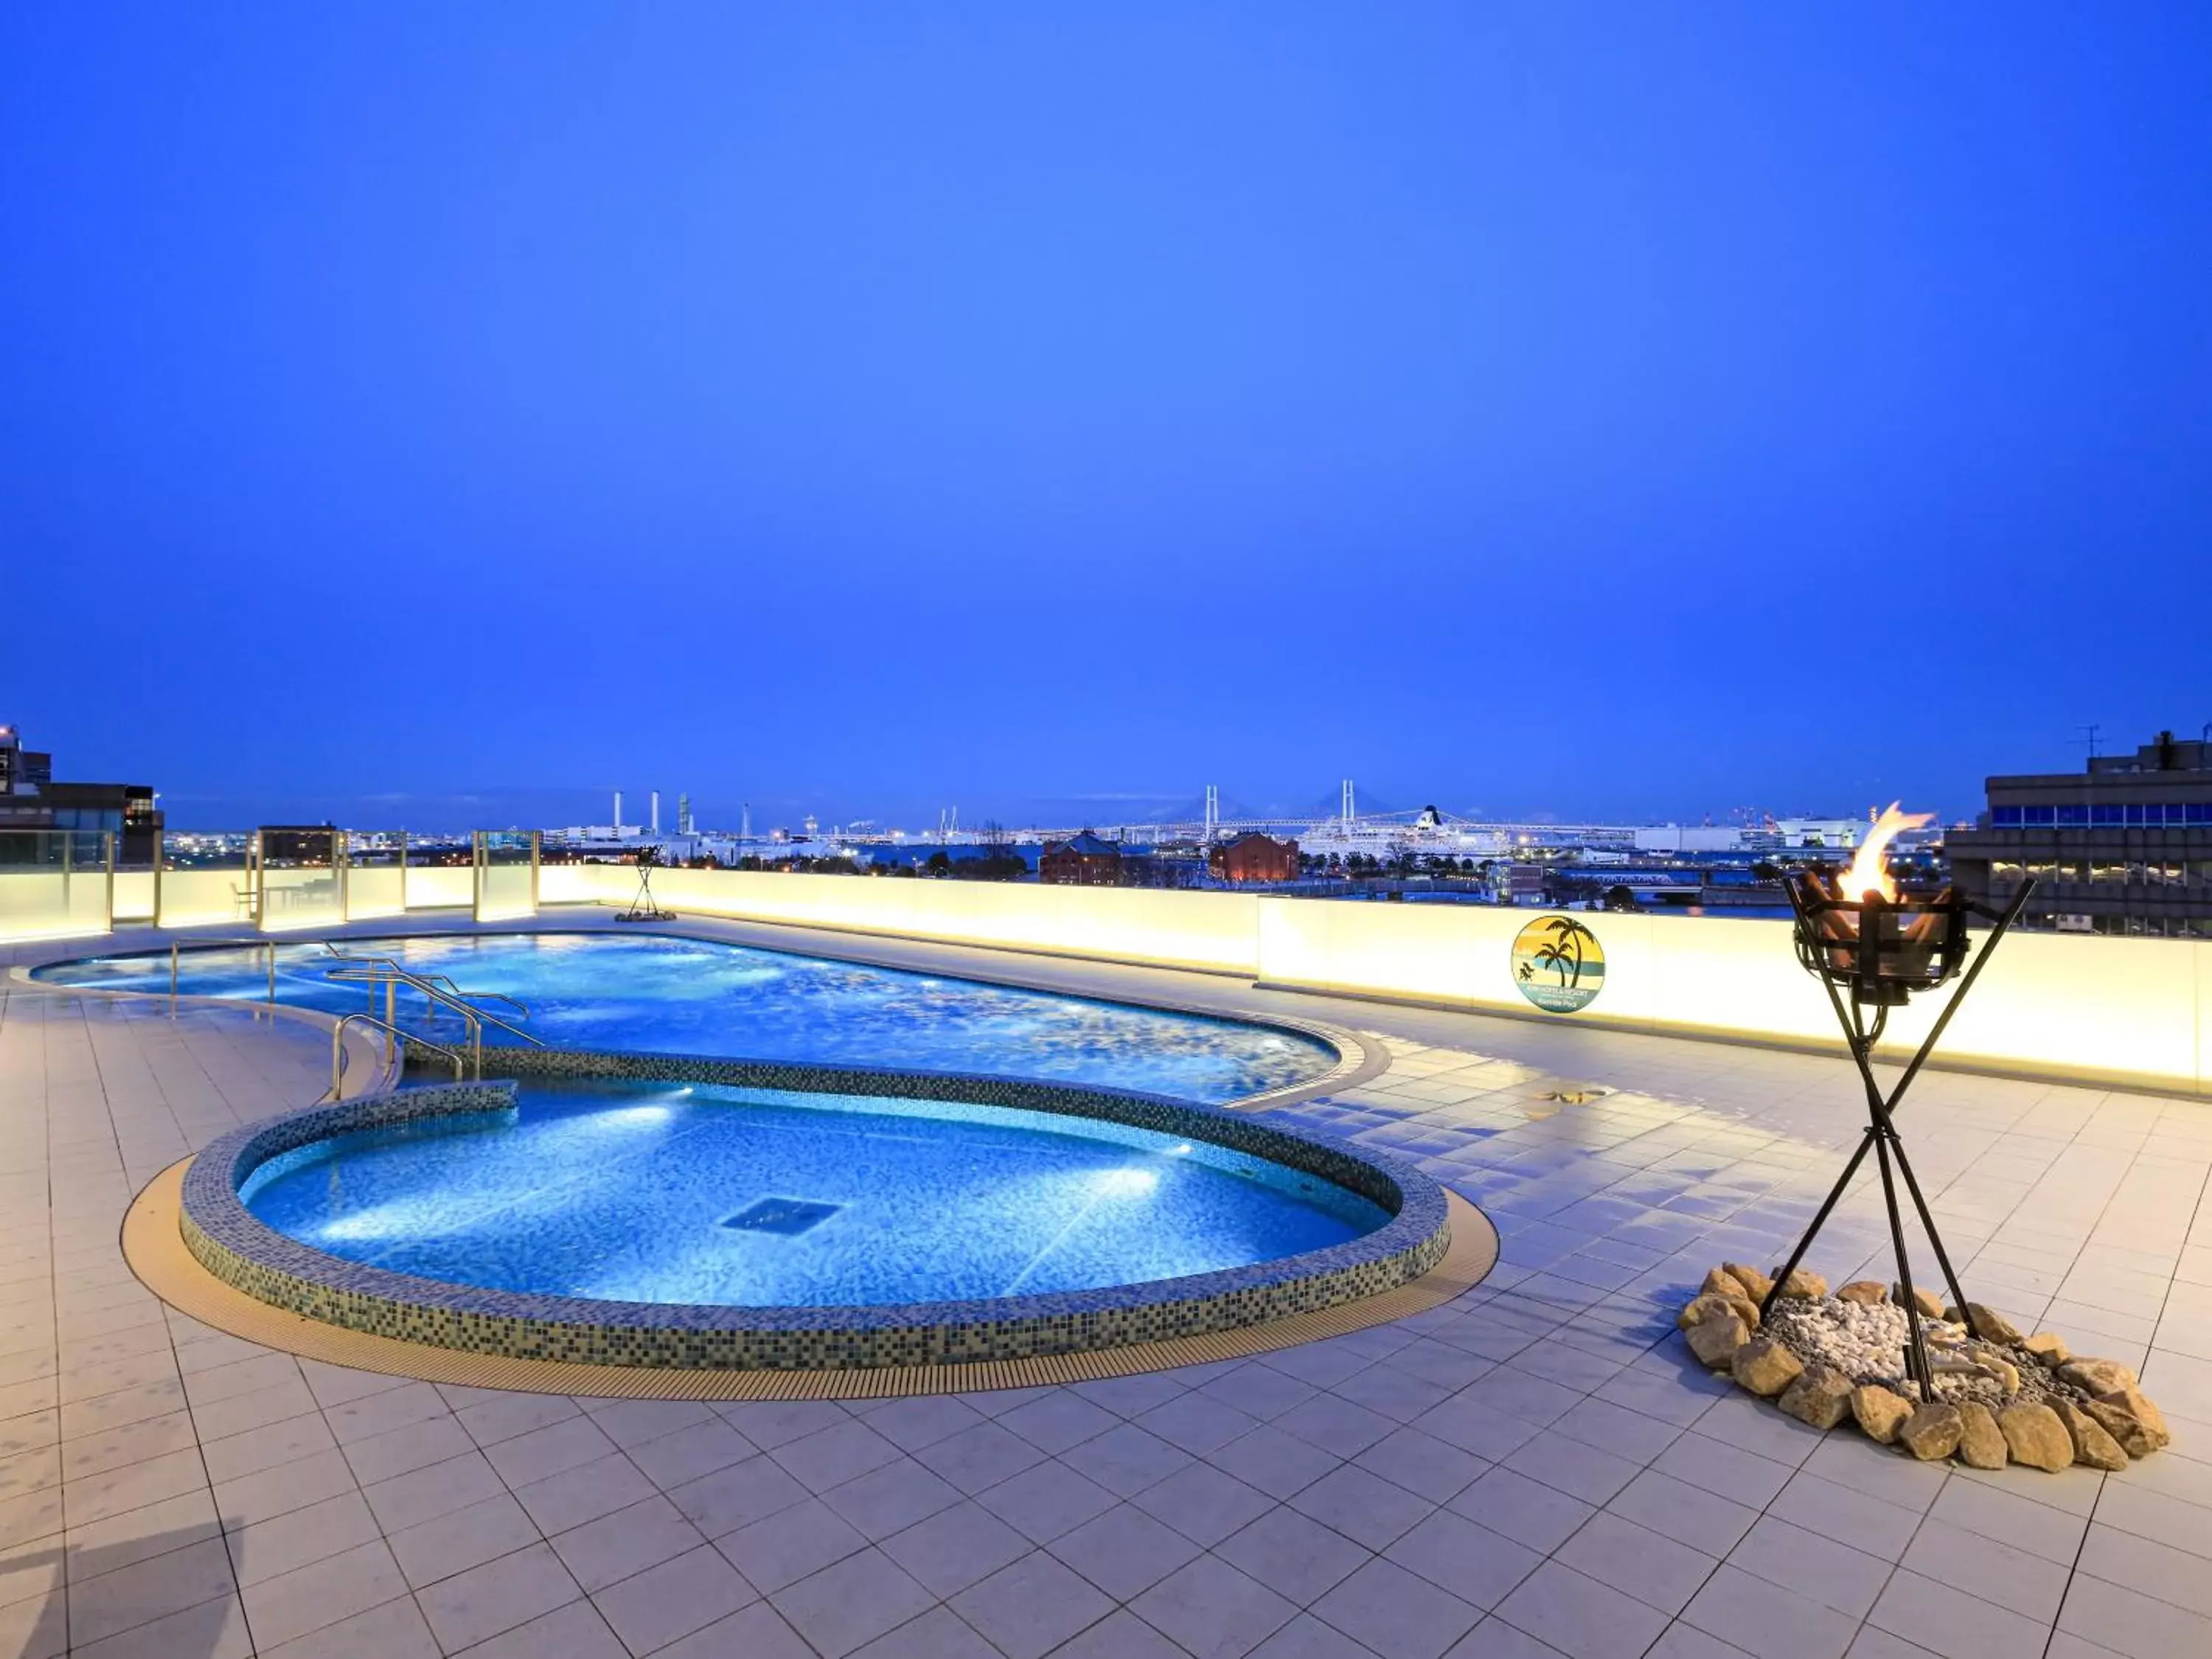 Swimming Pool in APA Hotel & Resort Yokohama Bay Tower